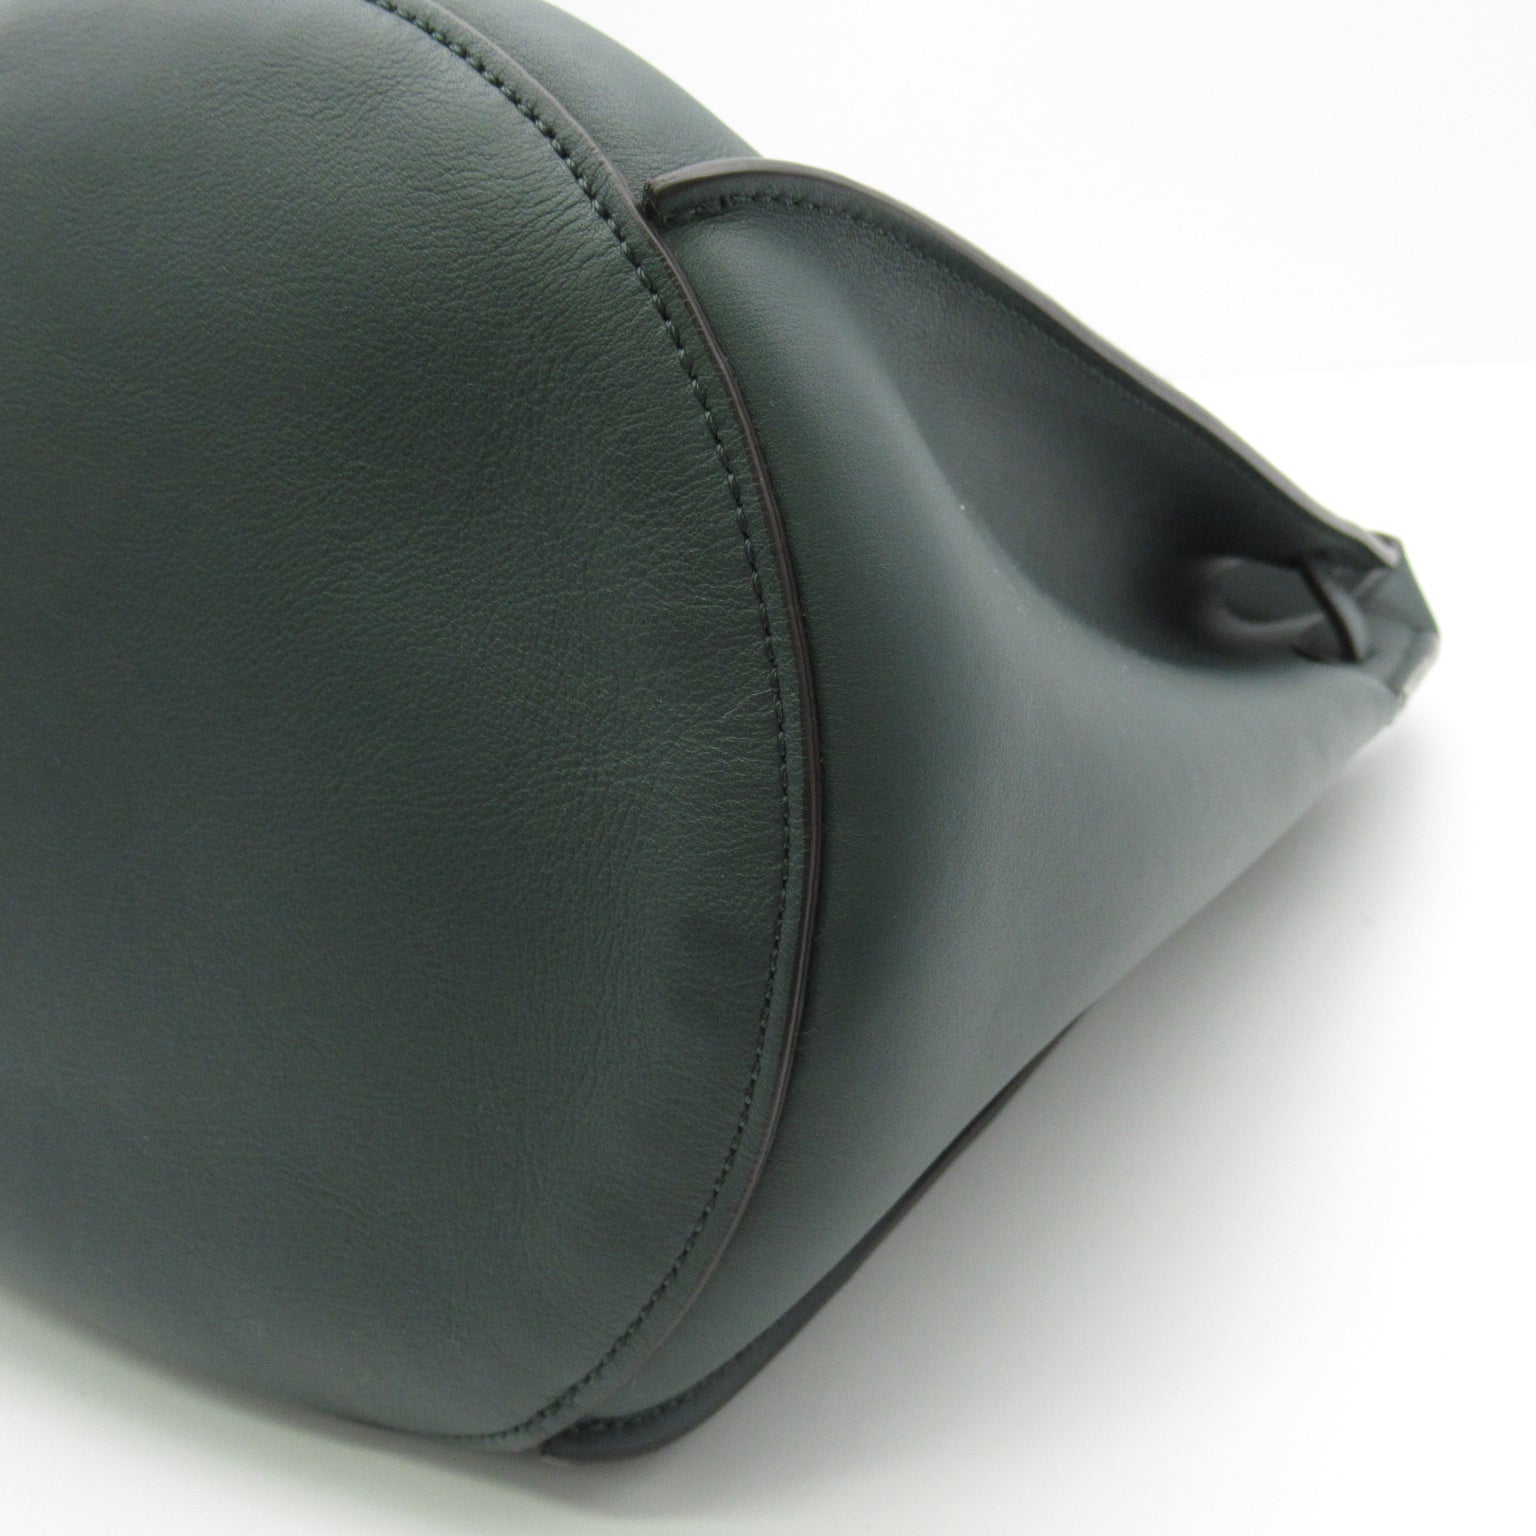 Seline Celine Big Bag Bag Bag Shoulder Bag Shoulder Bag Leather  Green 183343